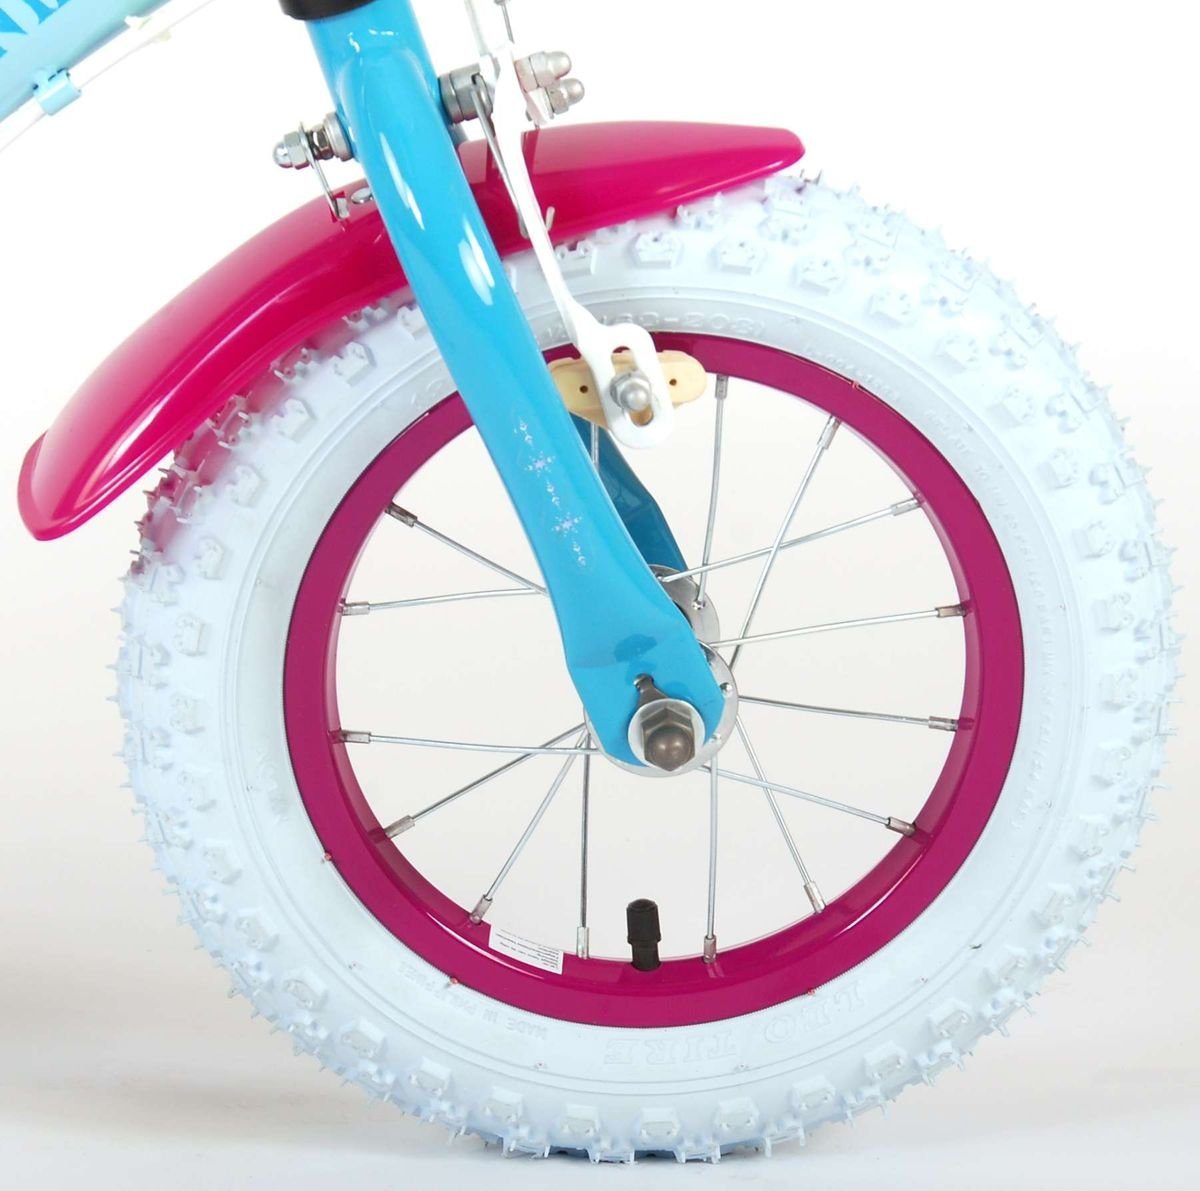 Baumarkt Kinderfahrräder Volare Kinderfahrrad 12 Zoll Kinder Fahrrad Kinderfahrrad Mädchenfahrrad Mädchenrad Rad Disney Frozen d